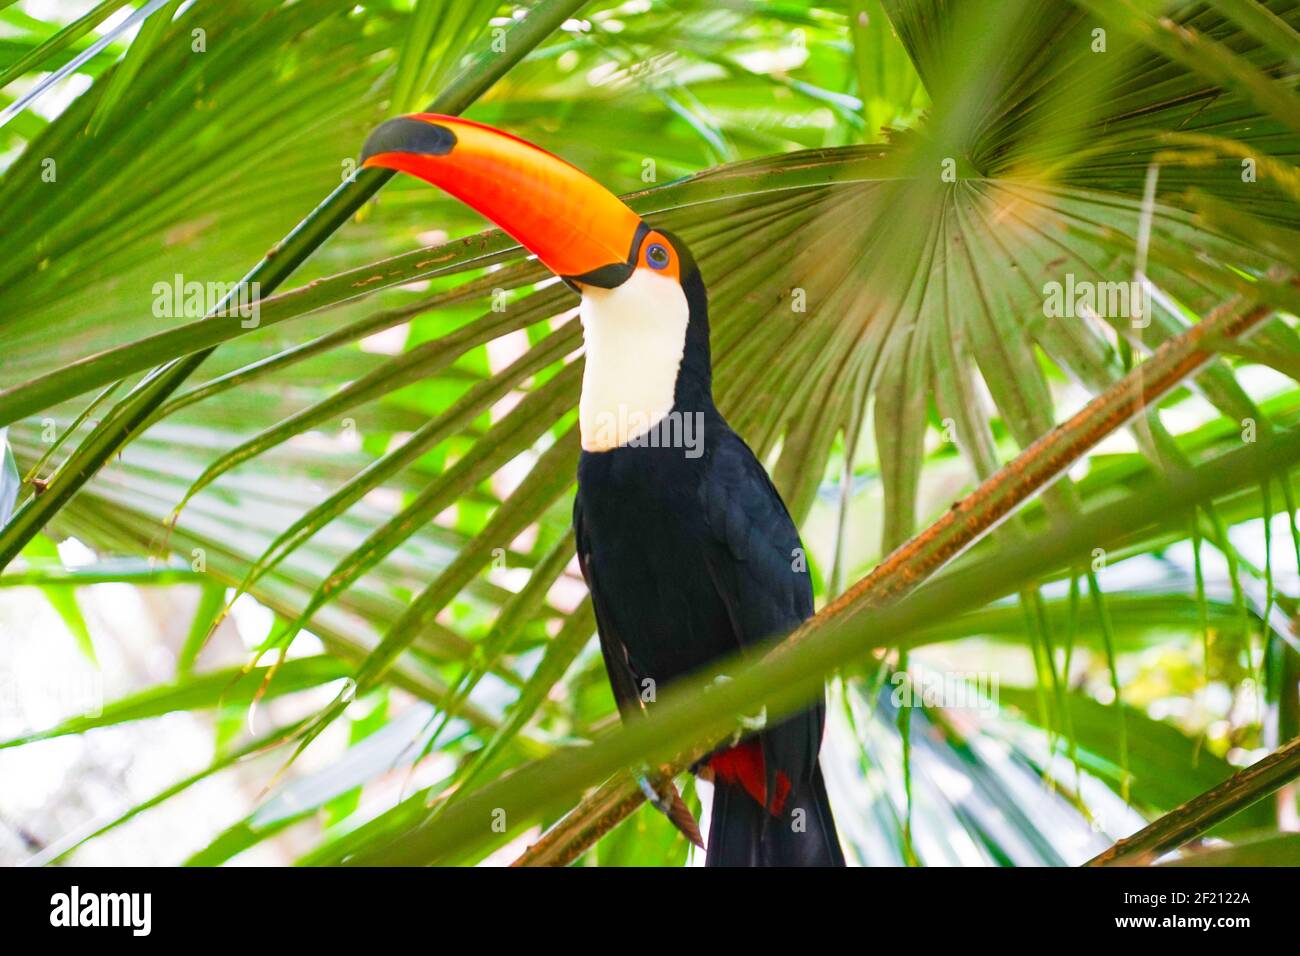 Toco Toucan (colorful tropical bird) Stock Photo